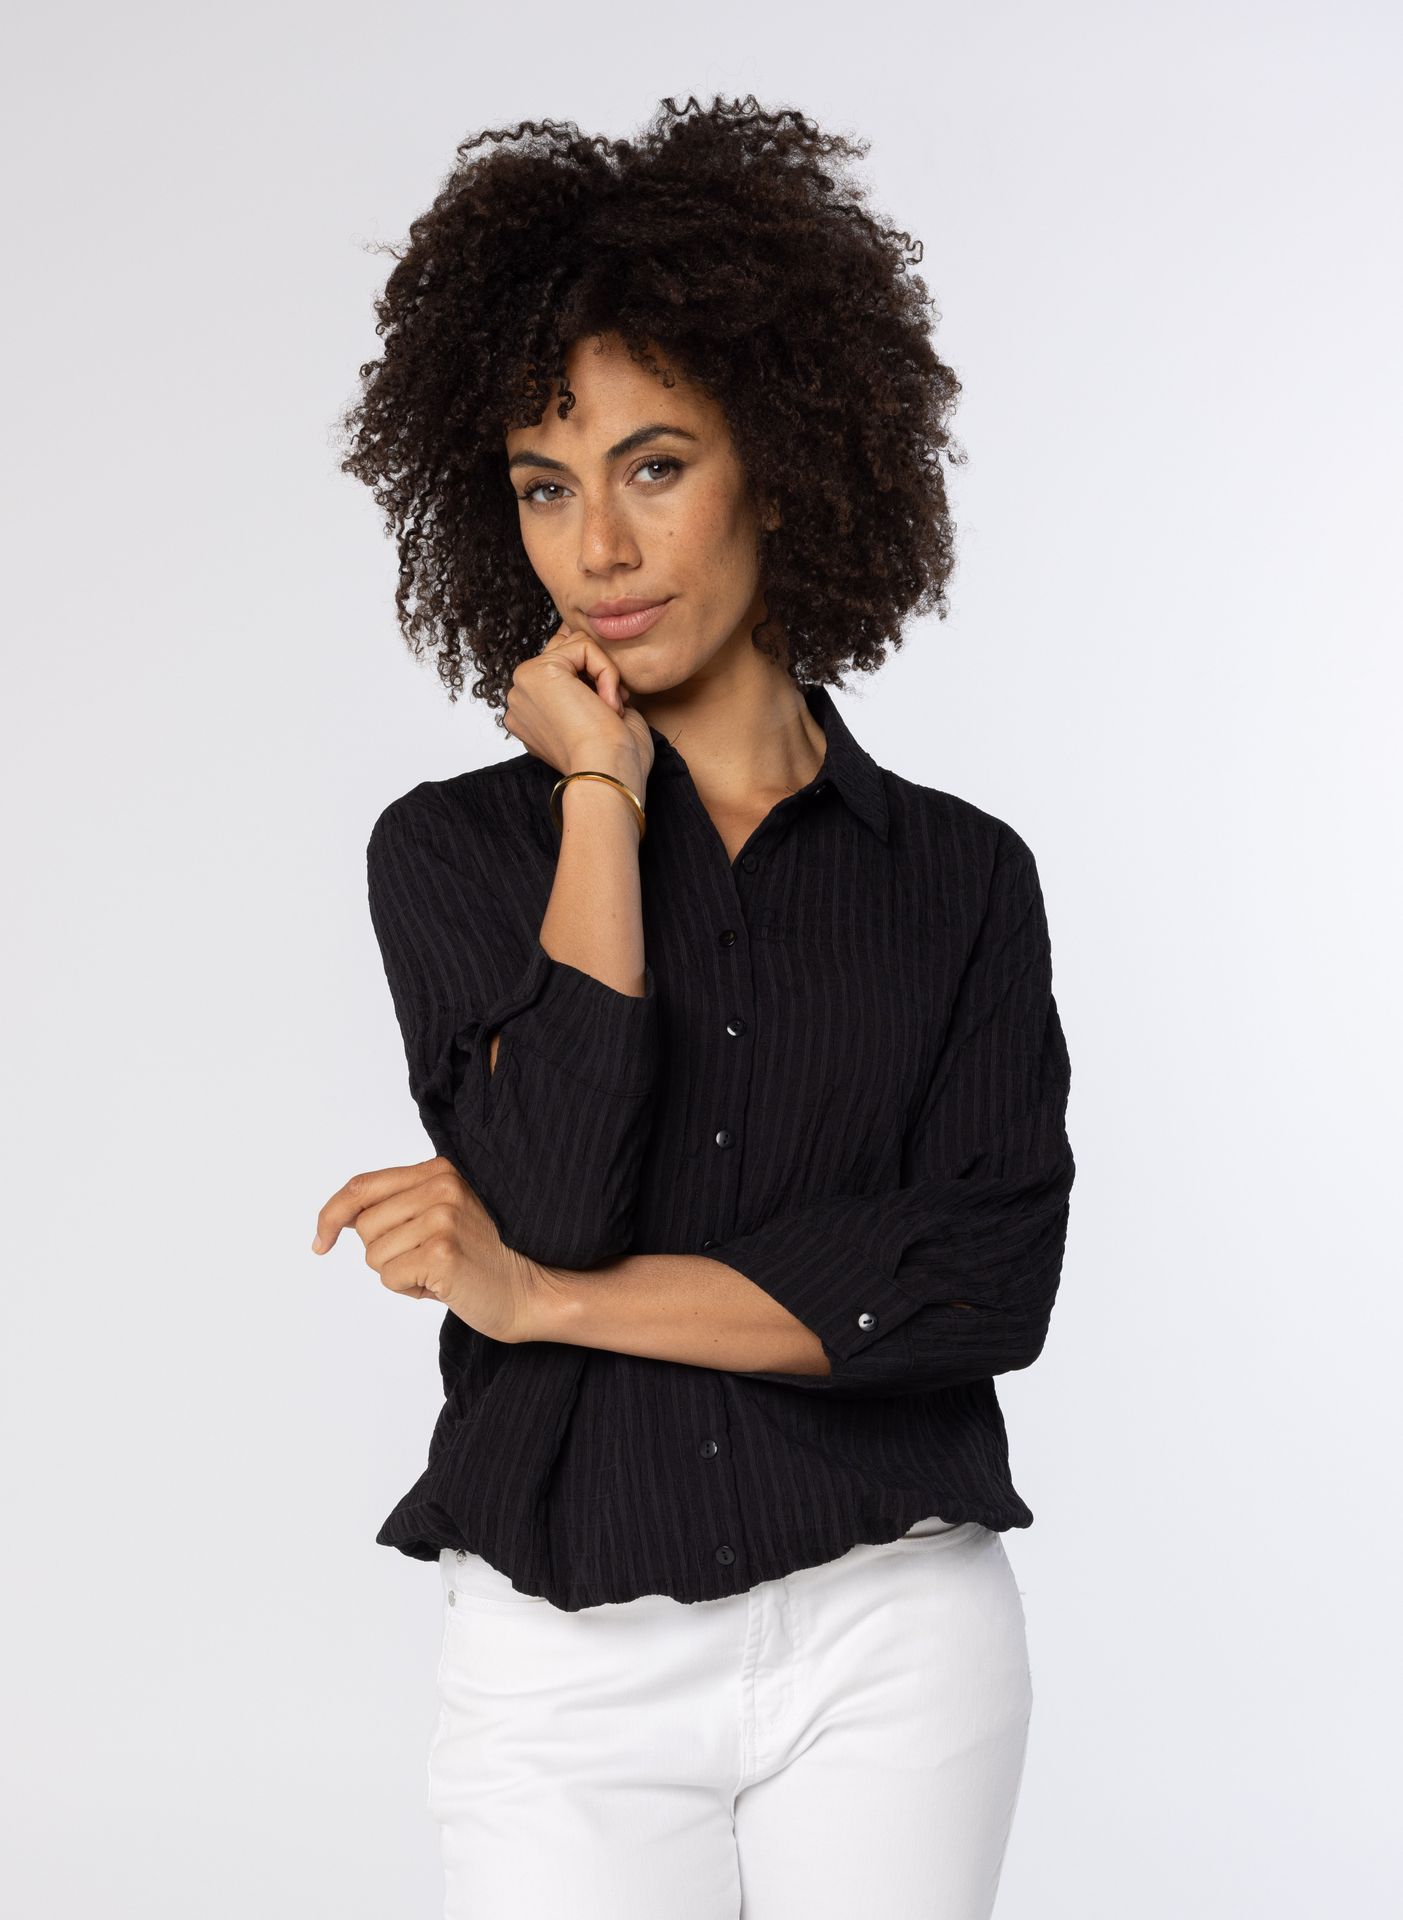 Norah Zwarte blouse met koord black 213899-001